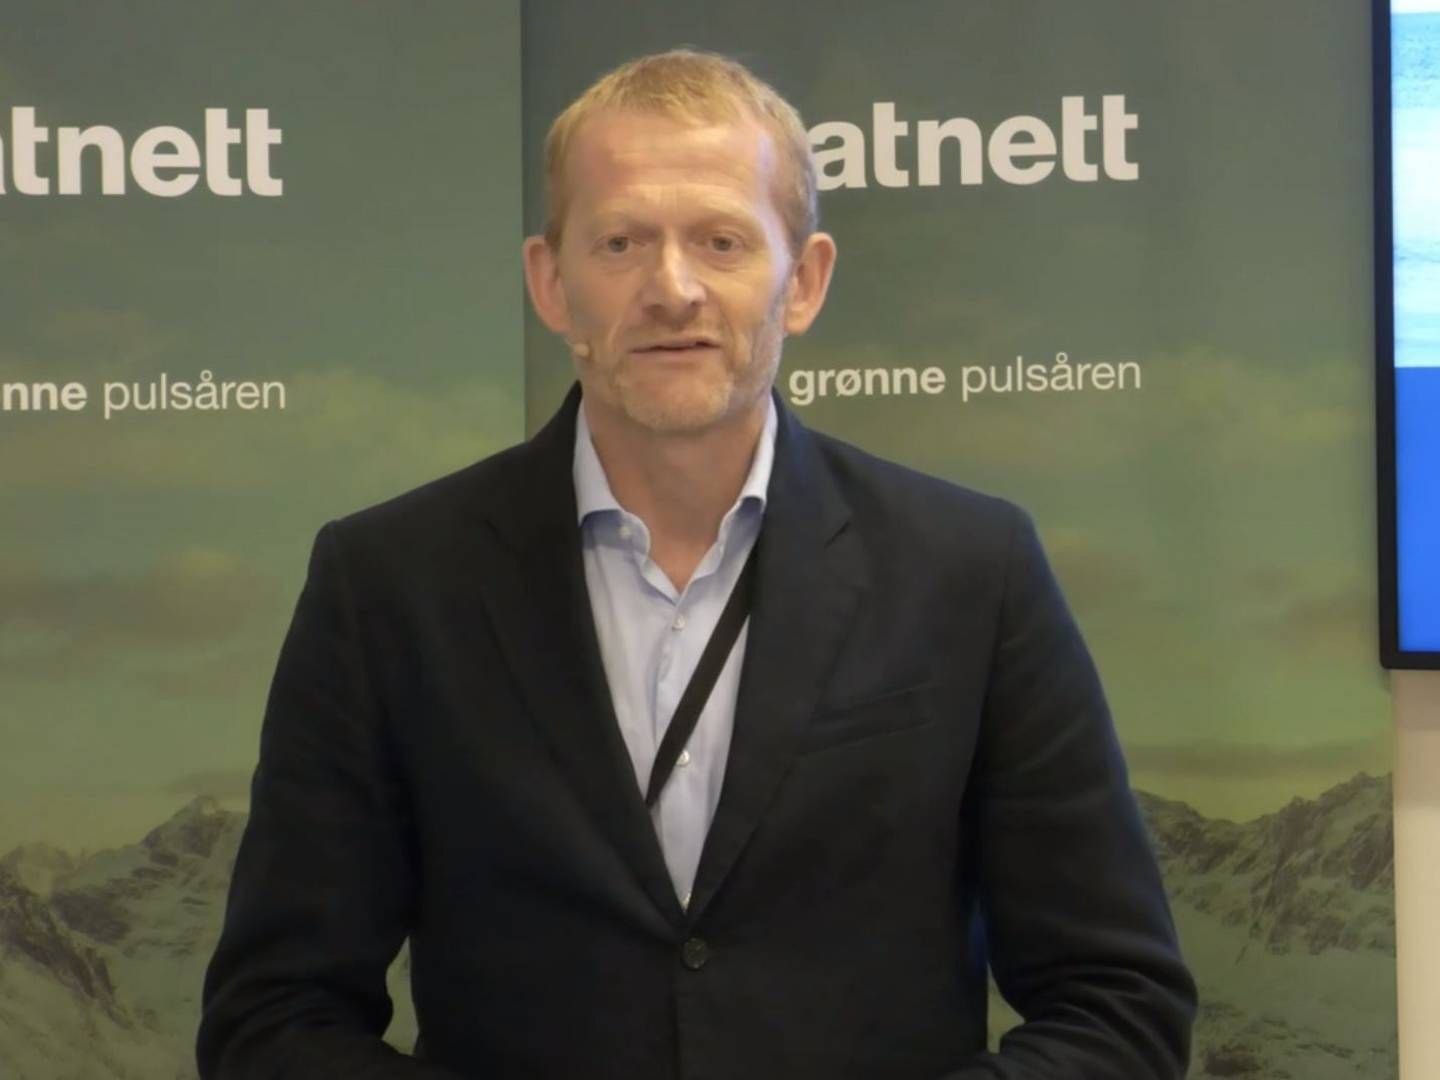 Konserndirektør for Utvikling Hav i Statnett, Håkon Borgen er glad Statnett har kommet ordentlig i gang.